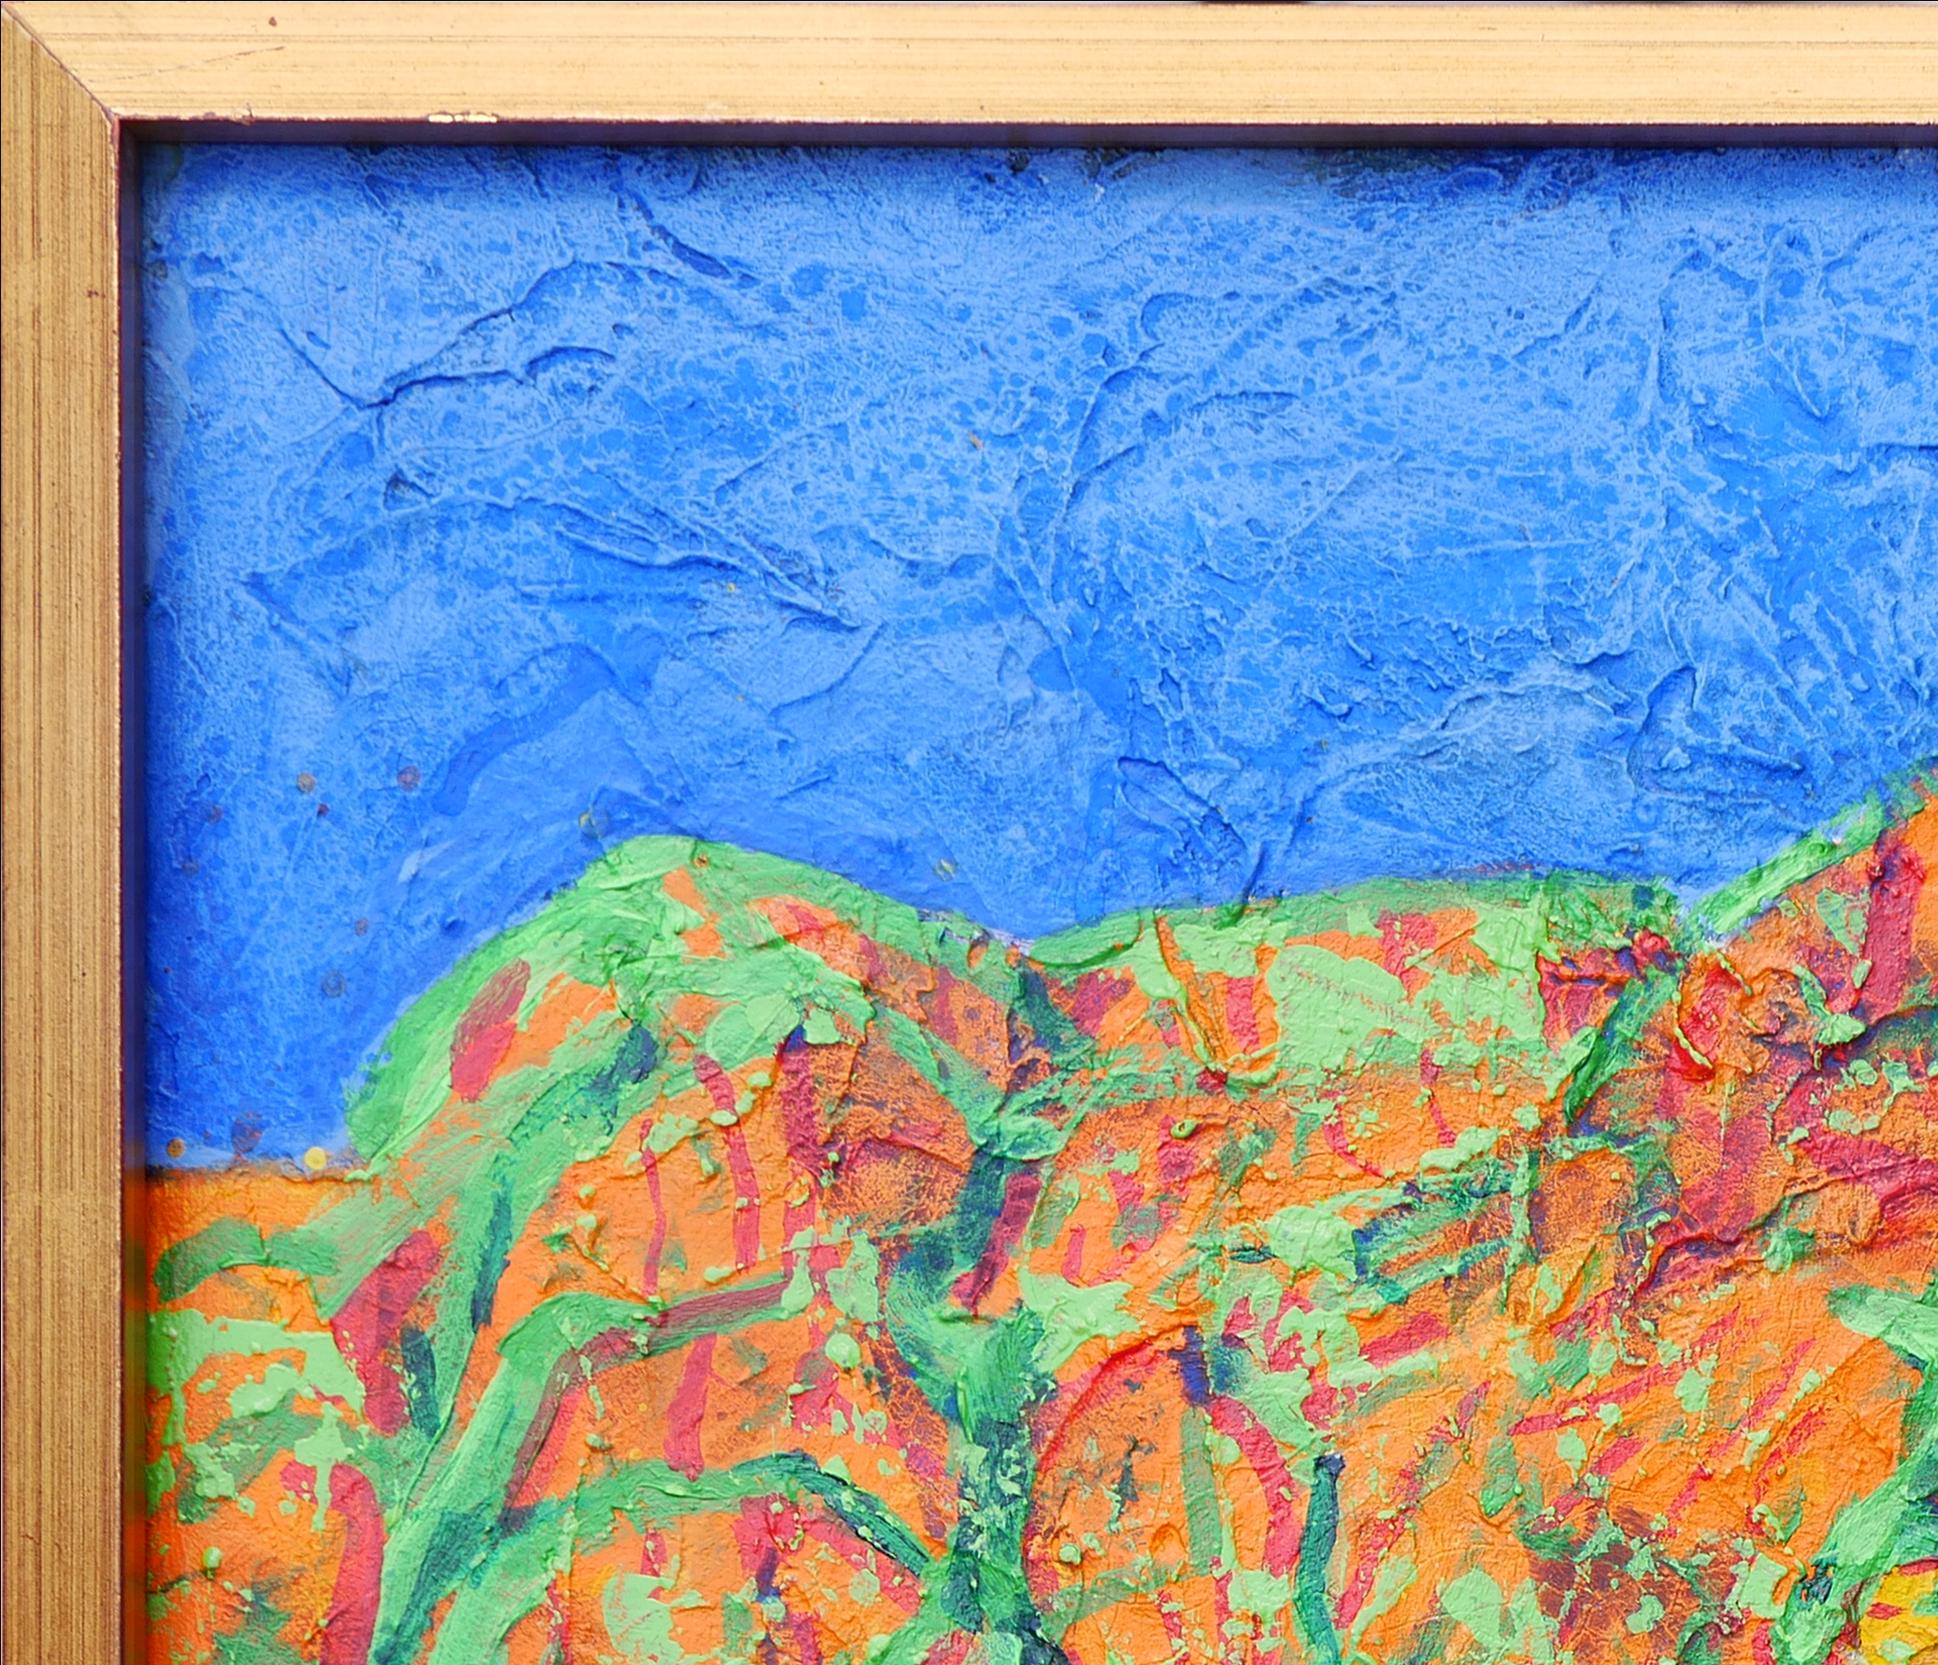 Blaue, gelbe, grüne und orangefarbene abstrakte Landschaftsmalerei des Künstlers Earl Staley aus Houston, TX. Das Gemälde zeigt die Chisos Mountains im Big Bend National Park in verschiedenen auffälligen Farben. Signiert, betitelt und datiert vom